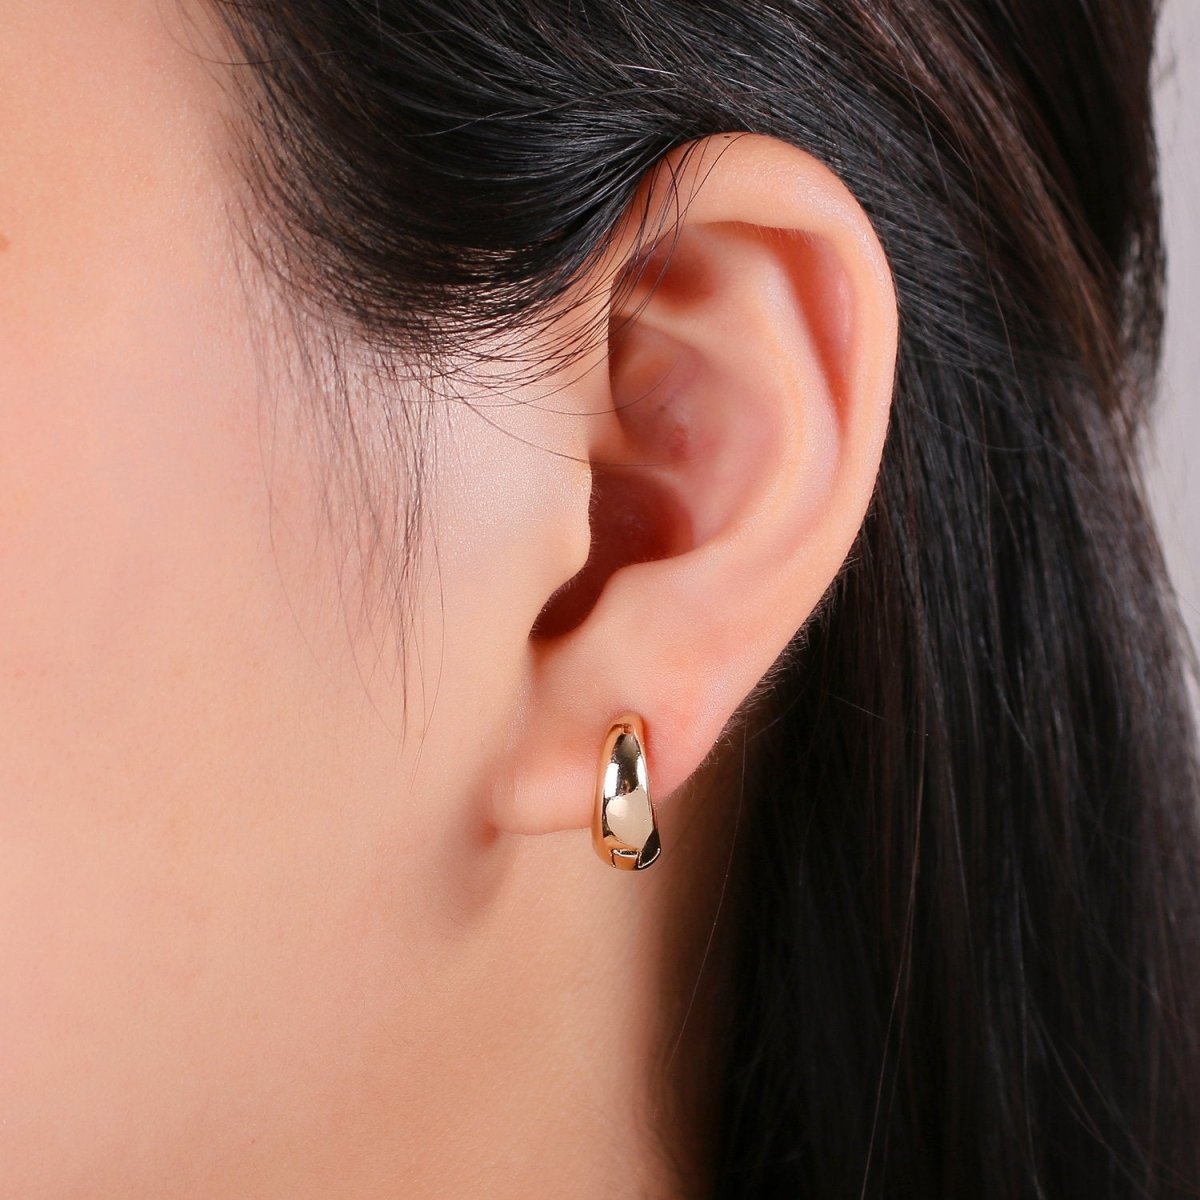 24k Vermeil Gold Earrings, Hoop Earring, Dainty Earrings, Simple Gold Plated Jewelry, Everyday Wear Earrings, Fashion Jewelry P-036 - DLUXCA